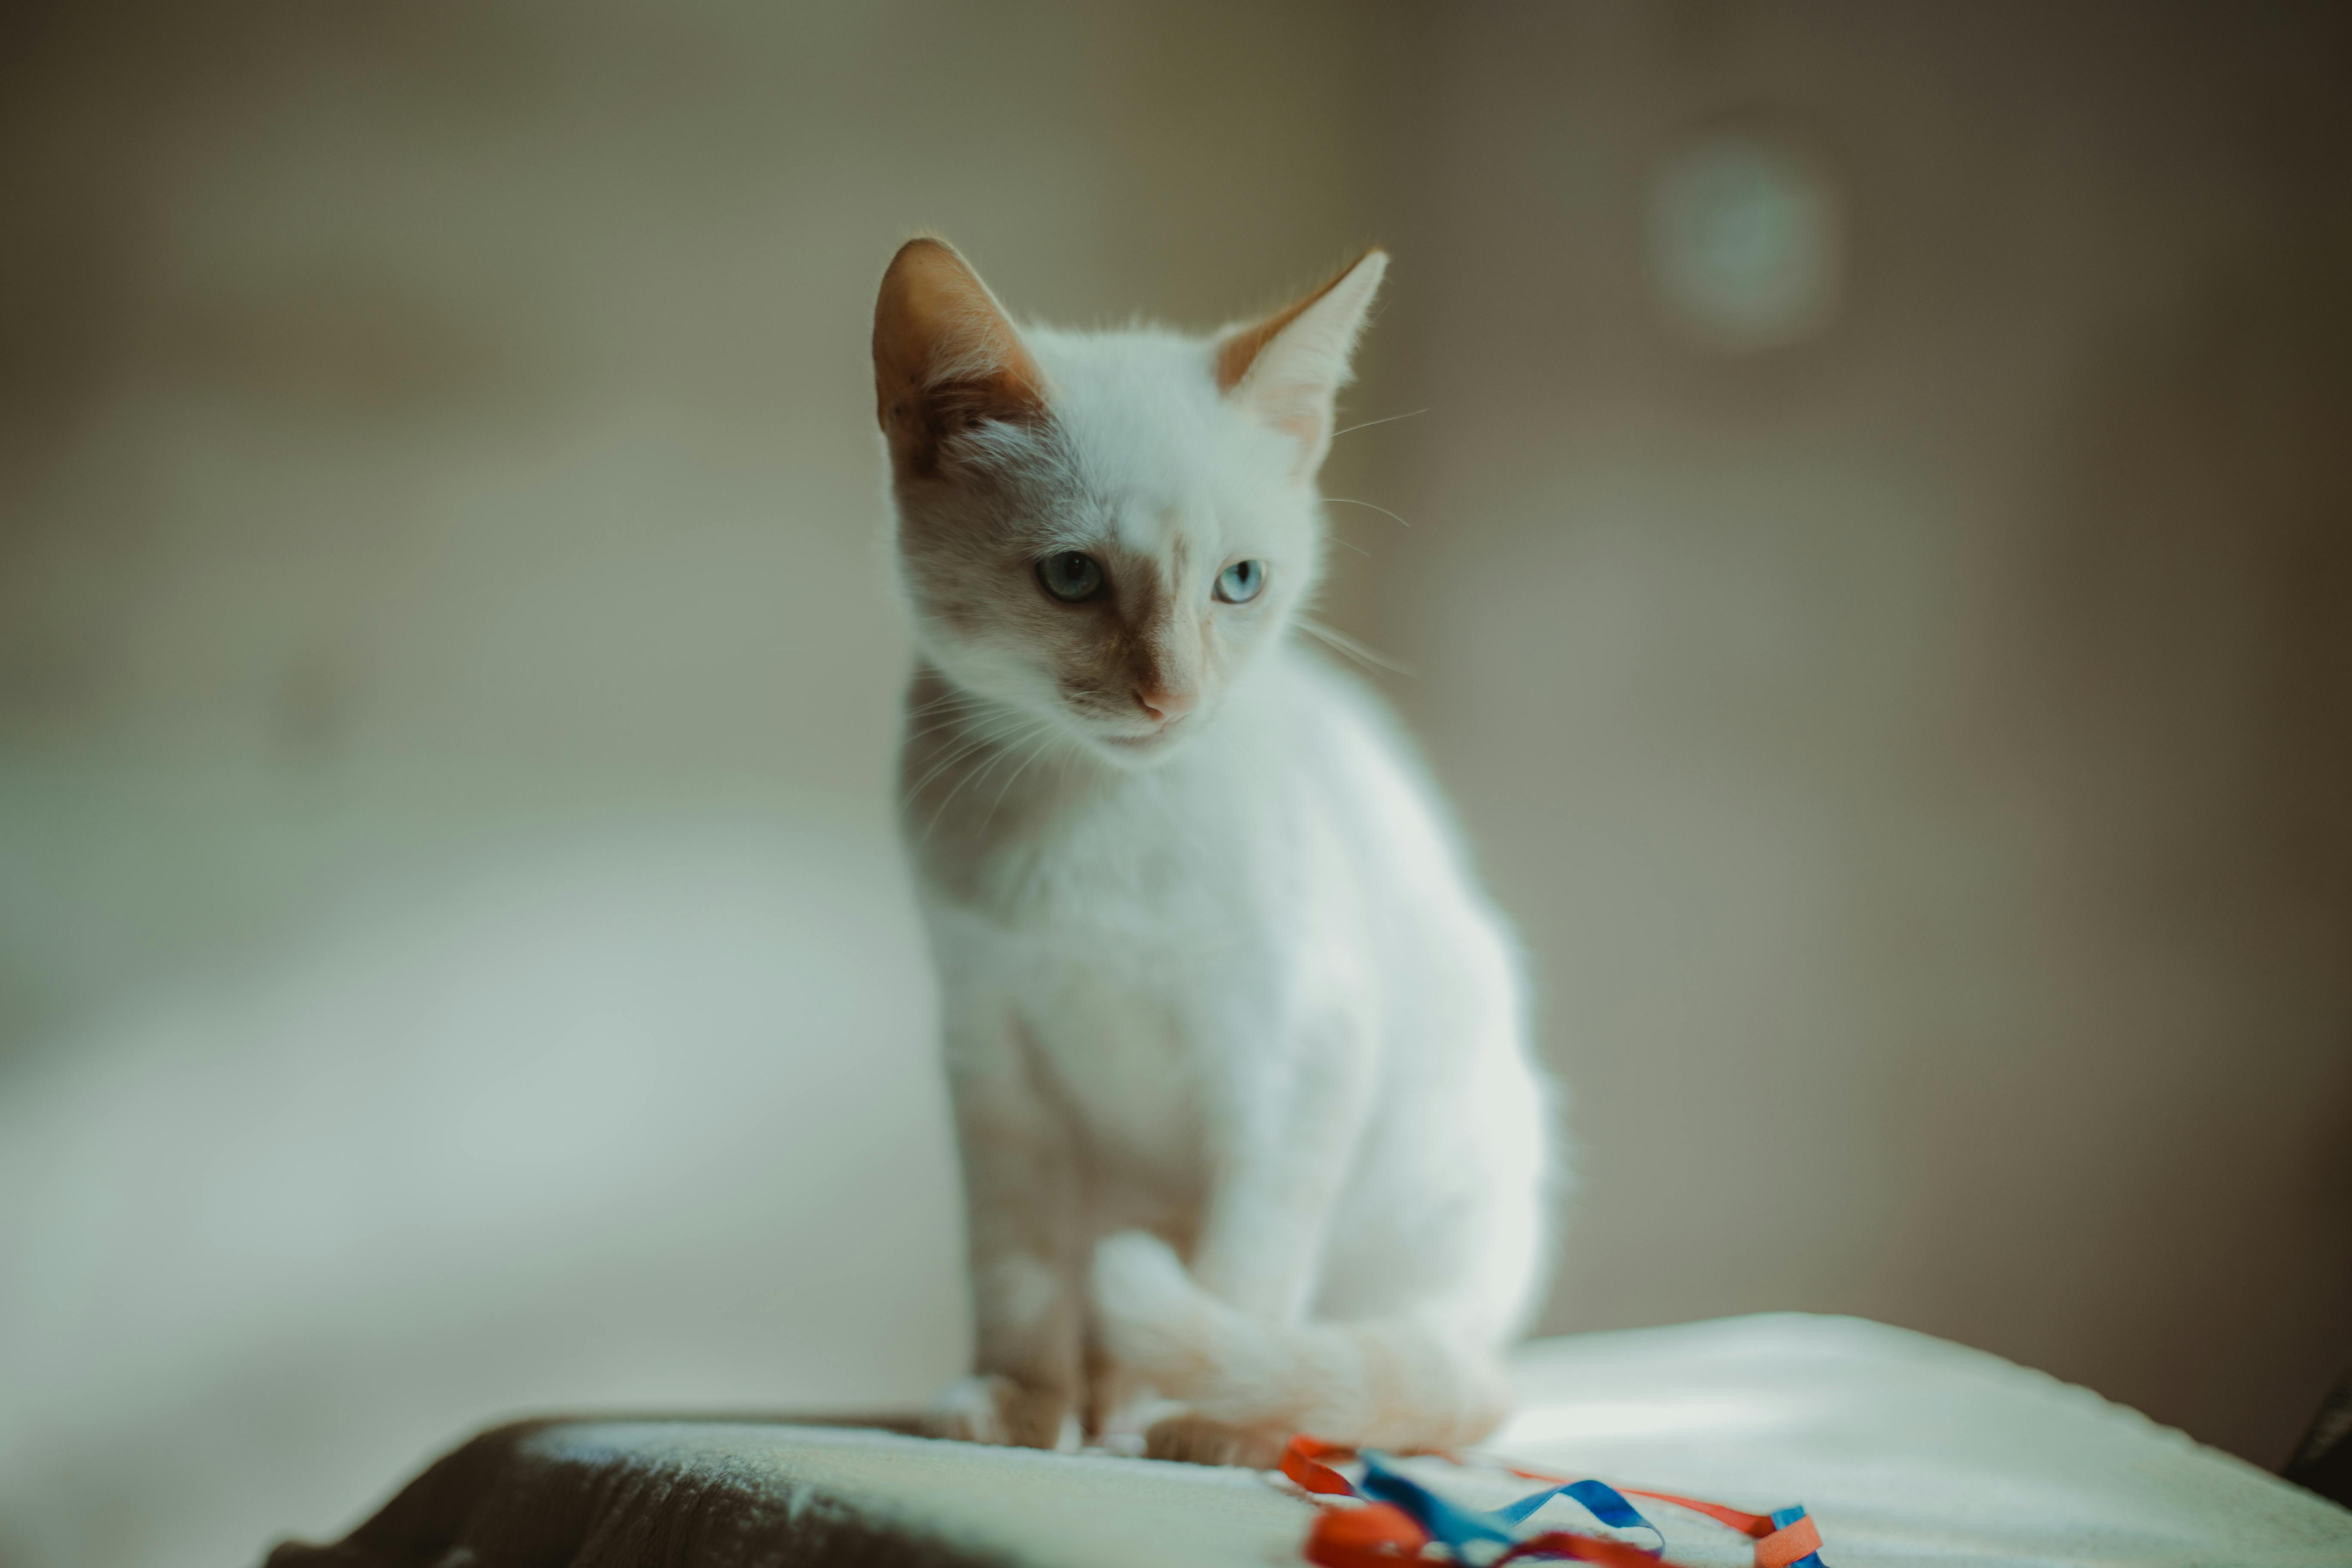 Mèo trắng là một trong những loại mèo đáng yêu nhất và được nhiều người yêu thích. Với bộ lông trắng mềm mại và đôi mắt to tròn, mèo trắng là một món quà tuyệt vời cho những tín đồ của thế giới động vật.